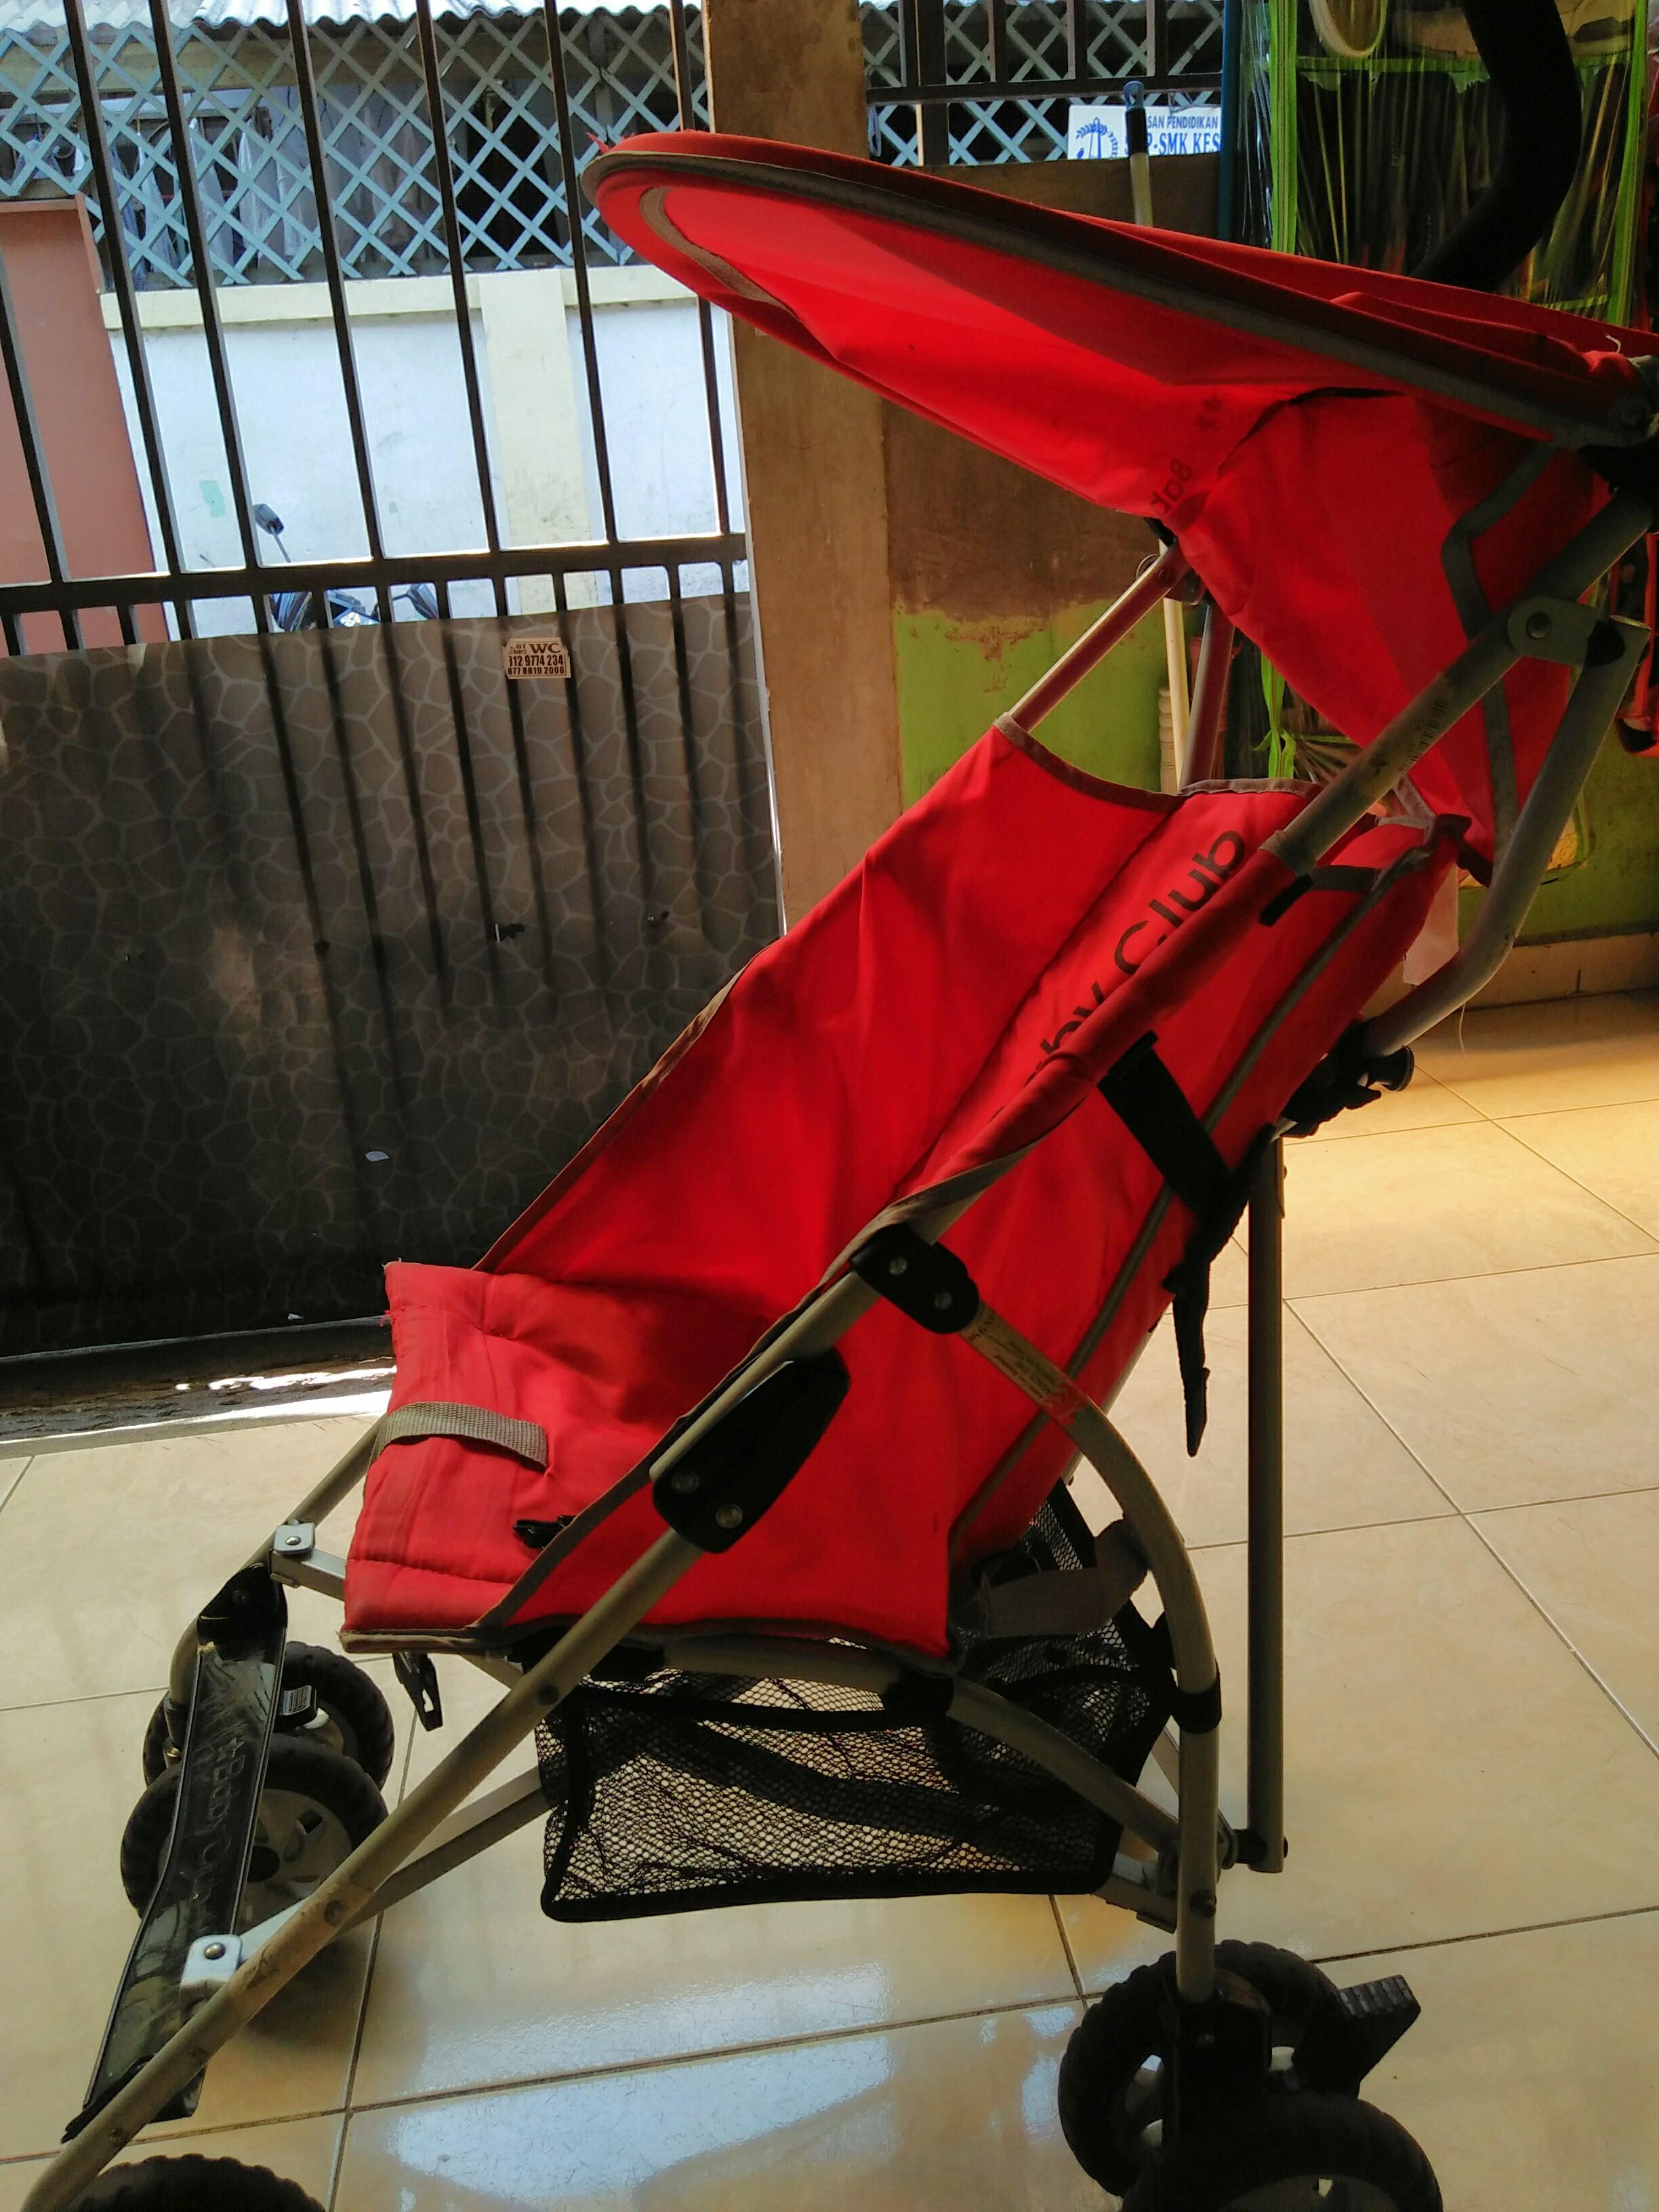 baby club stroller